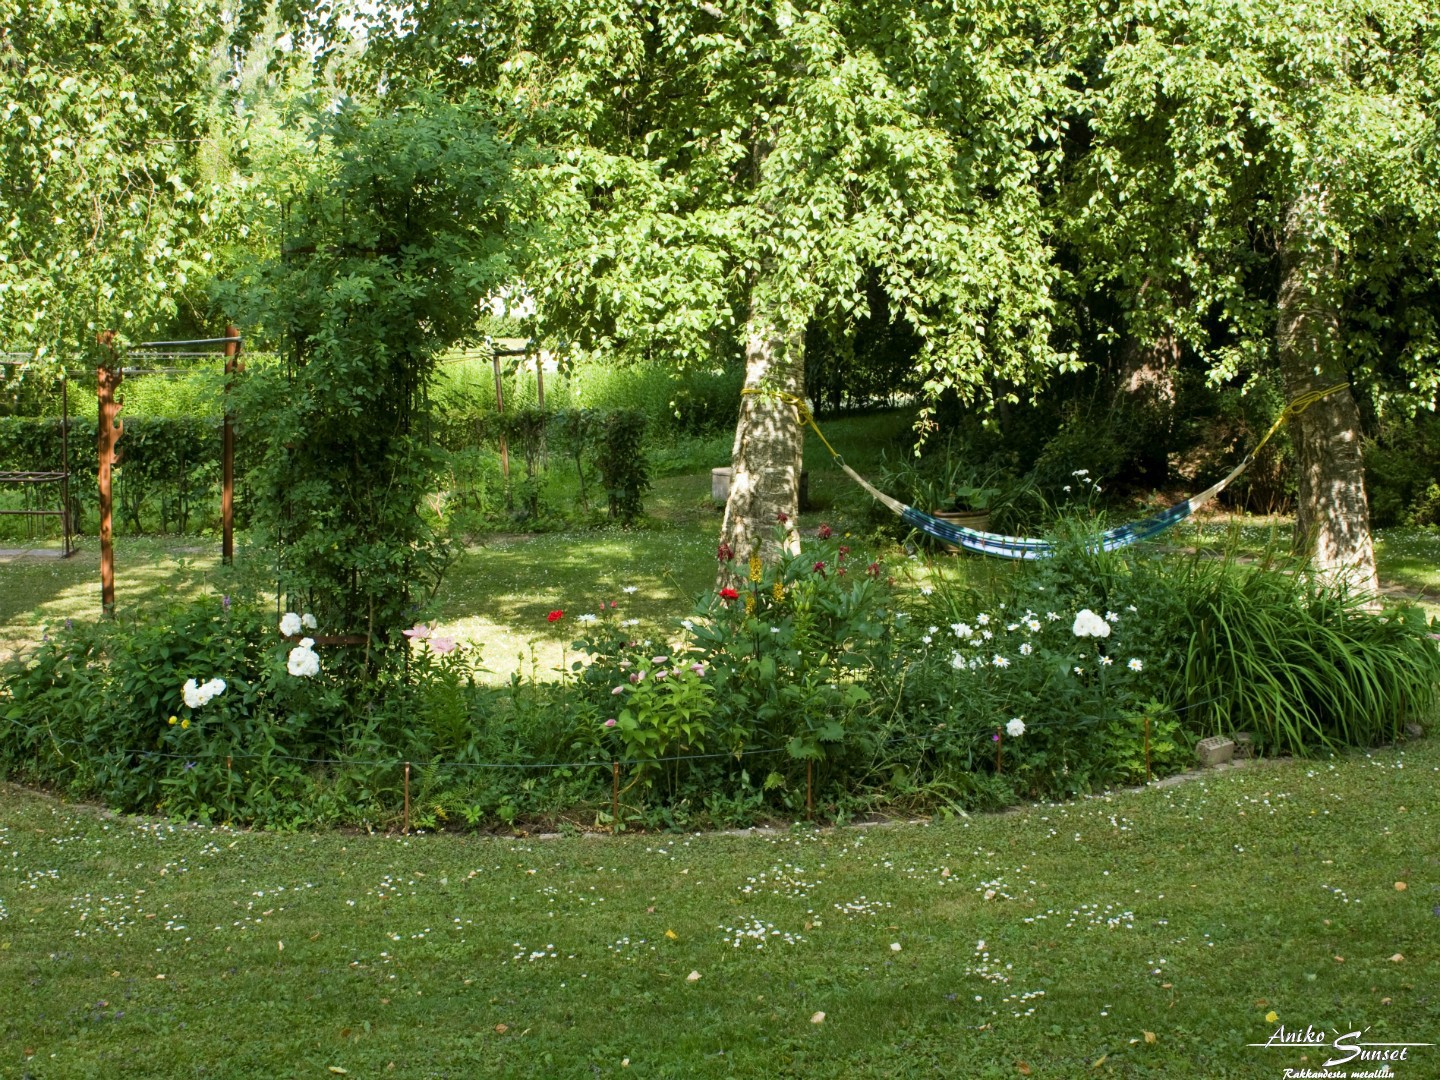 A perennial bed in the garden